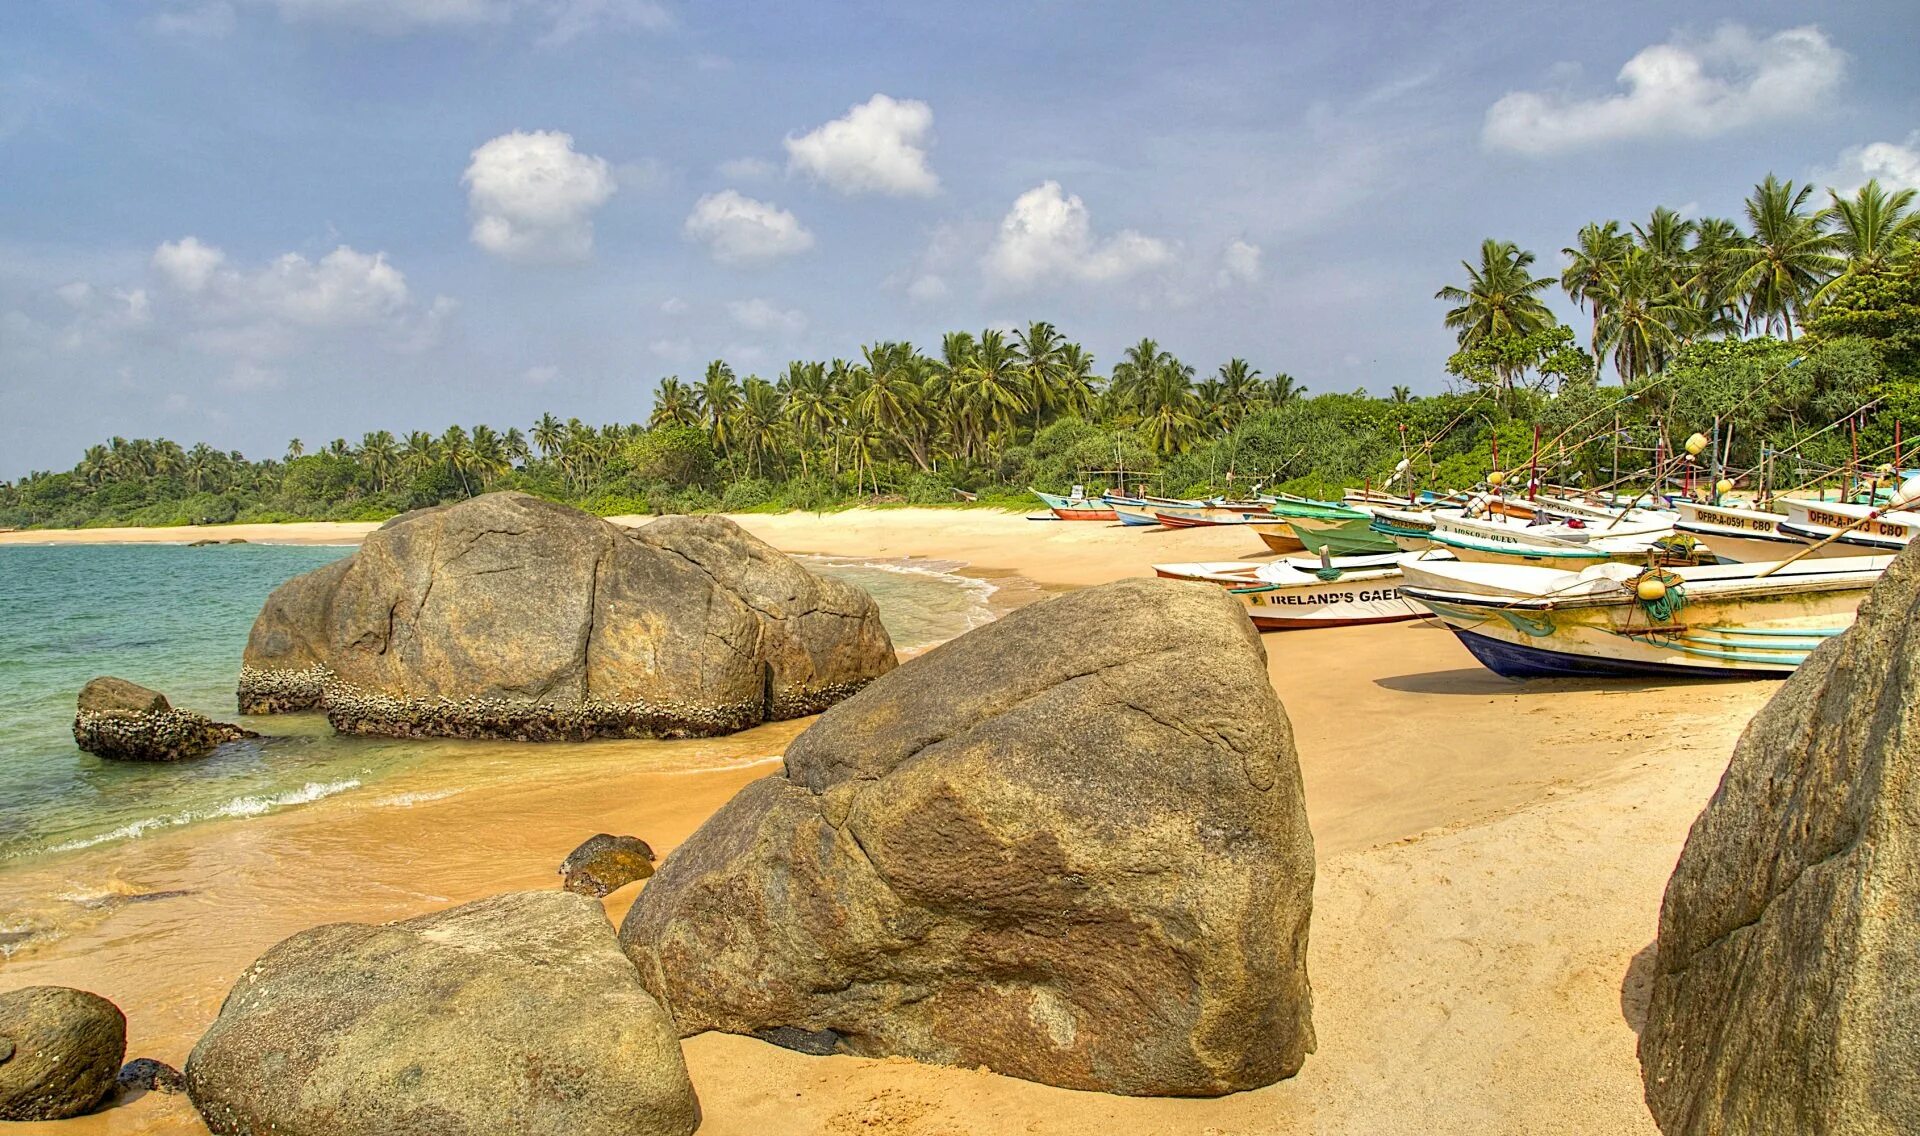 Цвета шри ланки. Берег острова Шри Ланка. Тринкомали Шри Ланка. Негомбо Шри Ланка. Шри Ланка Тринкомали пляж море.